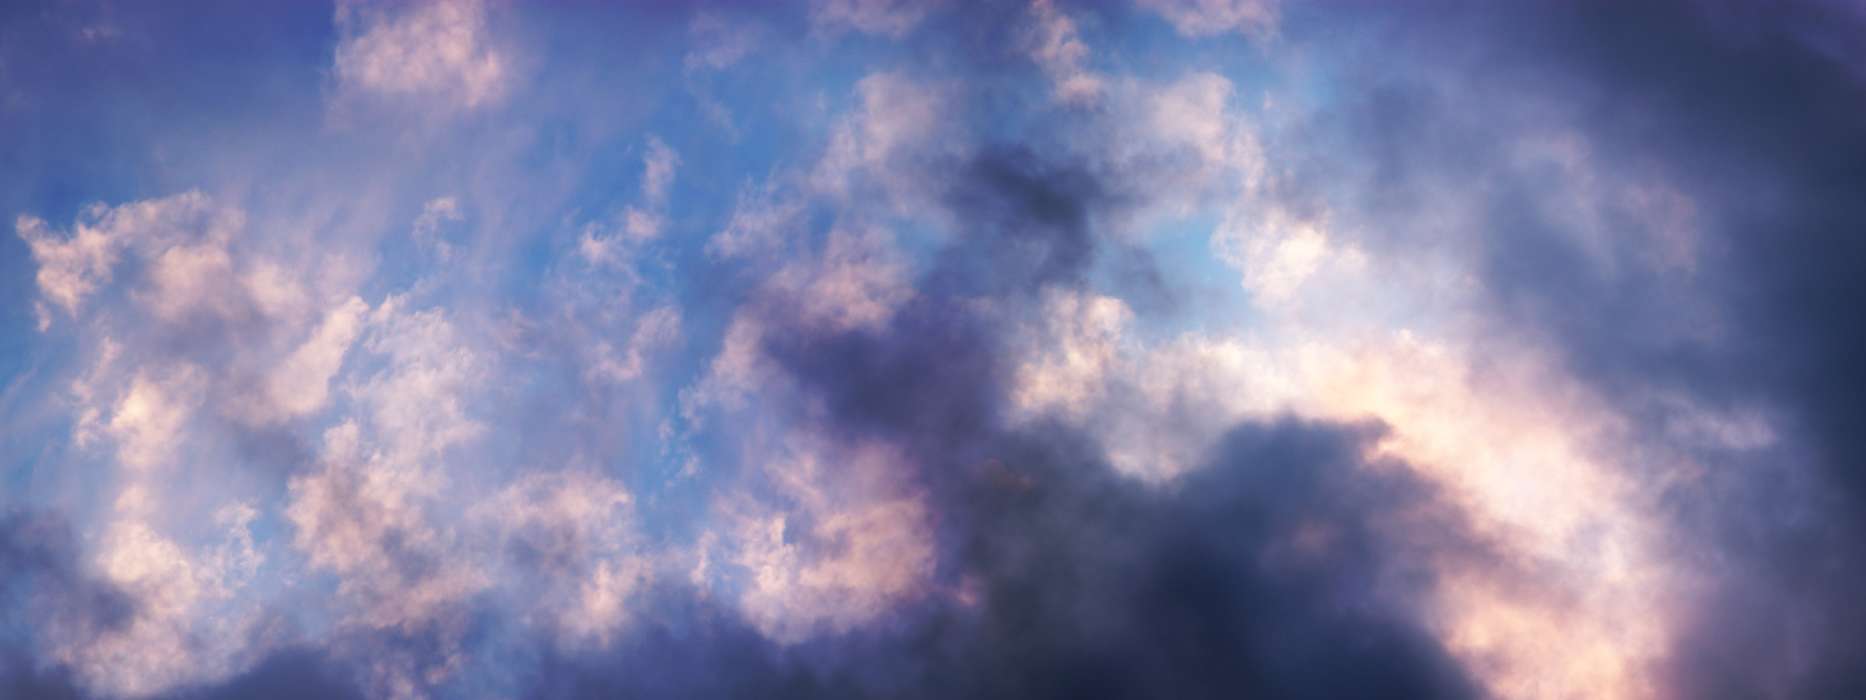 Hintergrund,Sky,Clouds